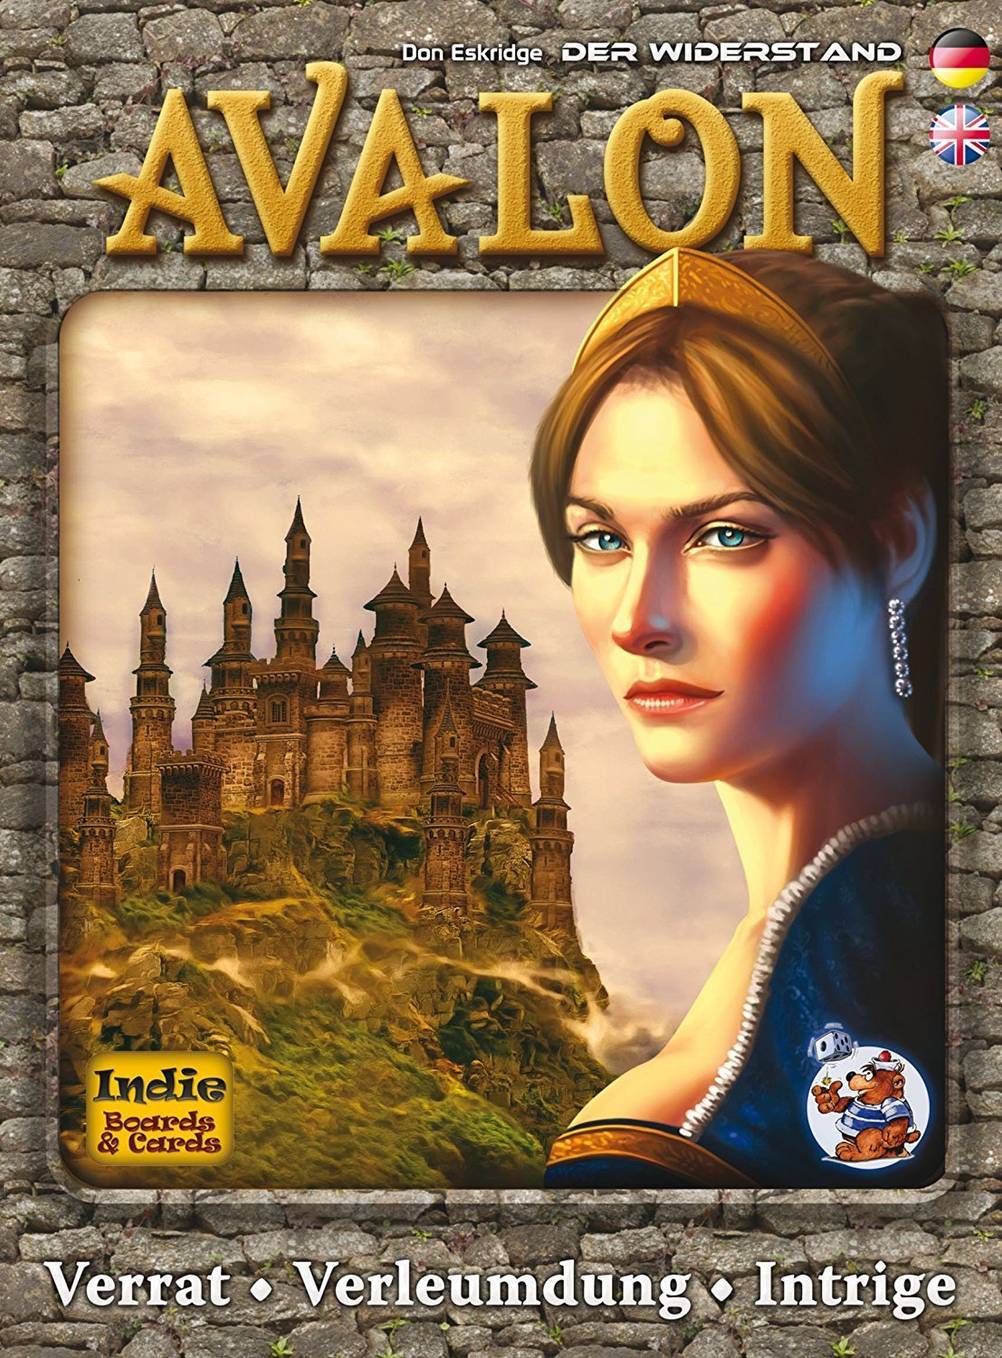 Avalon: Ein Abenteuer-Speil für Kinder ab 13 Jahren.